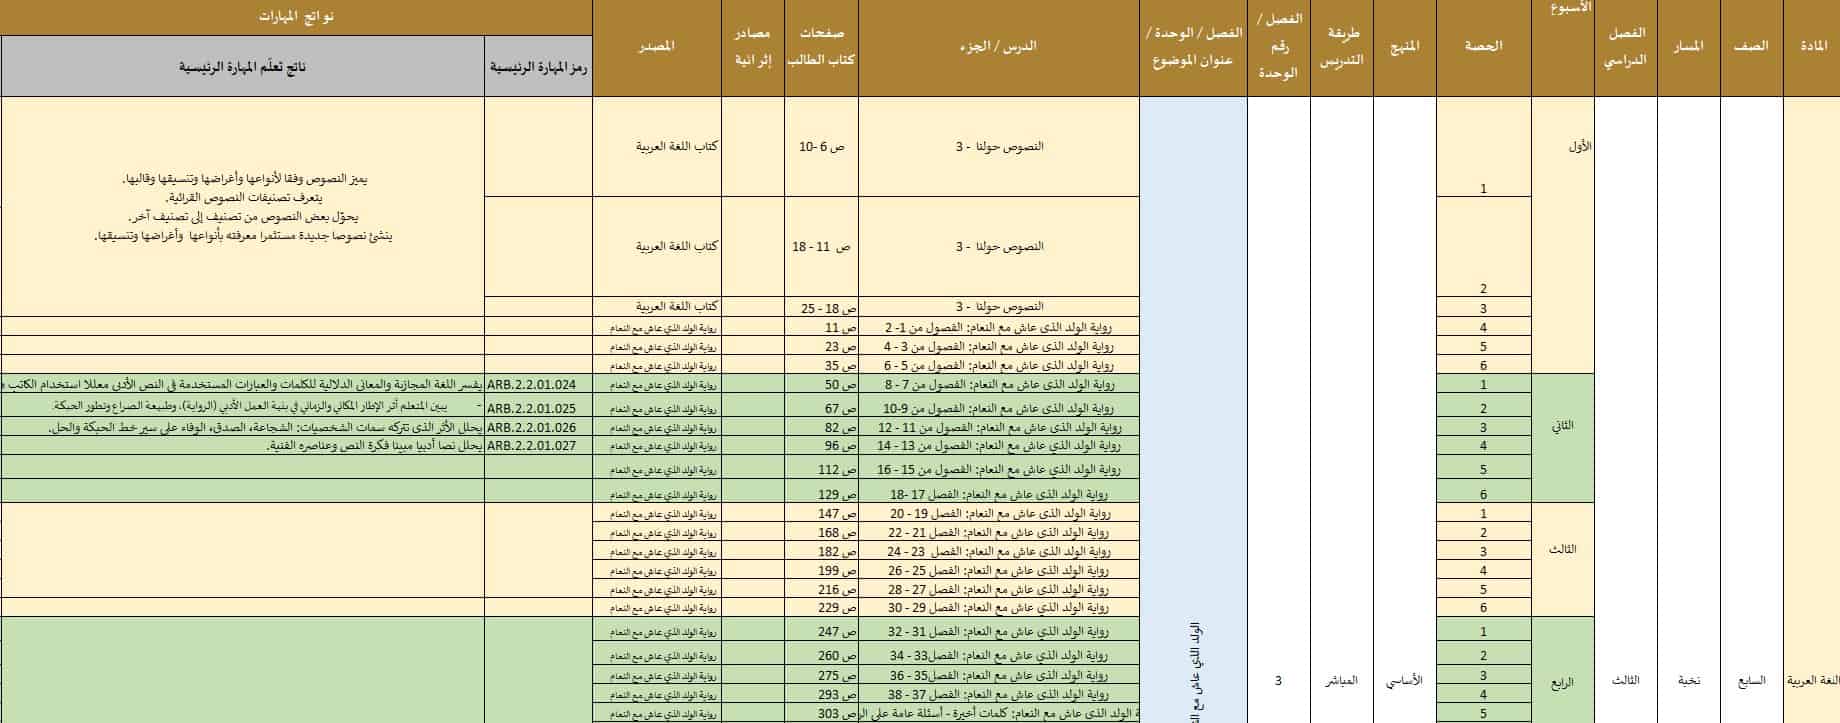 الخطة الزمنية الفصلية اللغة العربية الصف السابع نخبة الفصل الدراسي الثالث 2022-2023